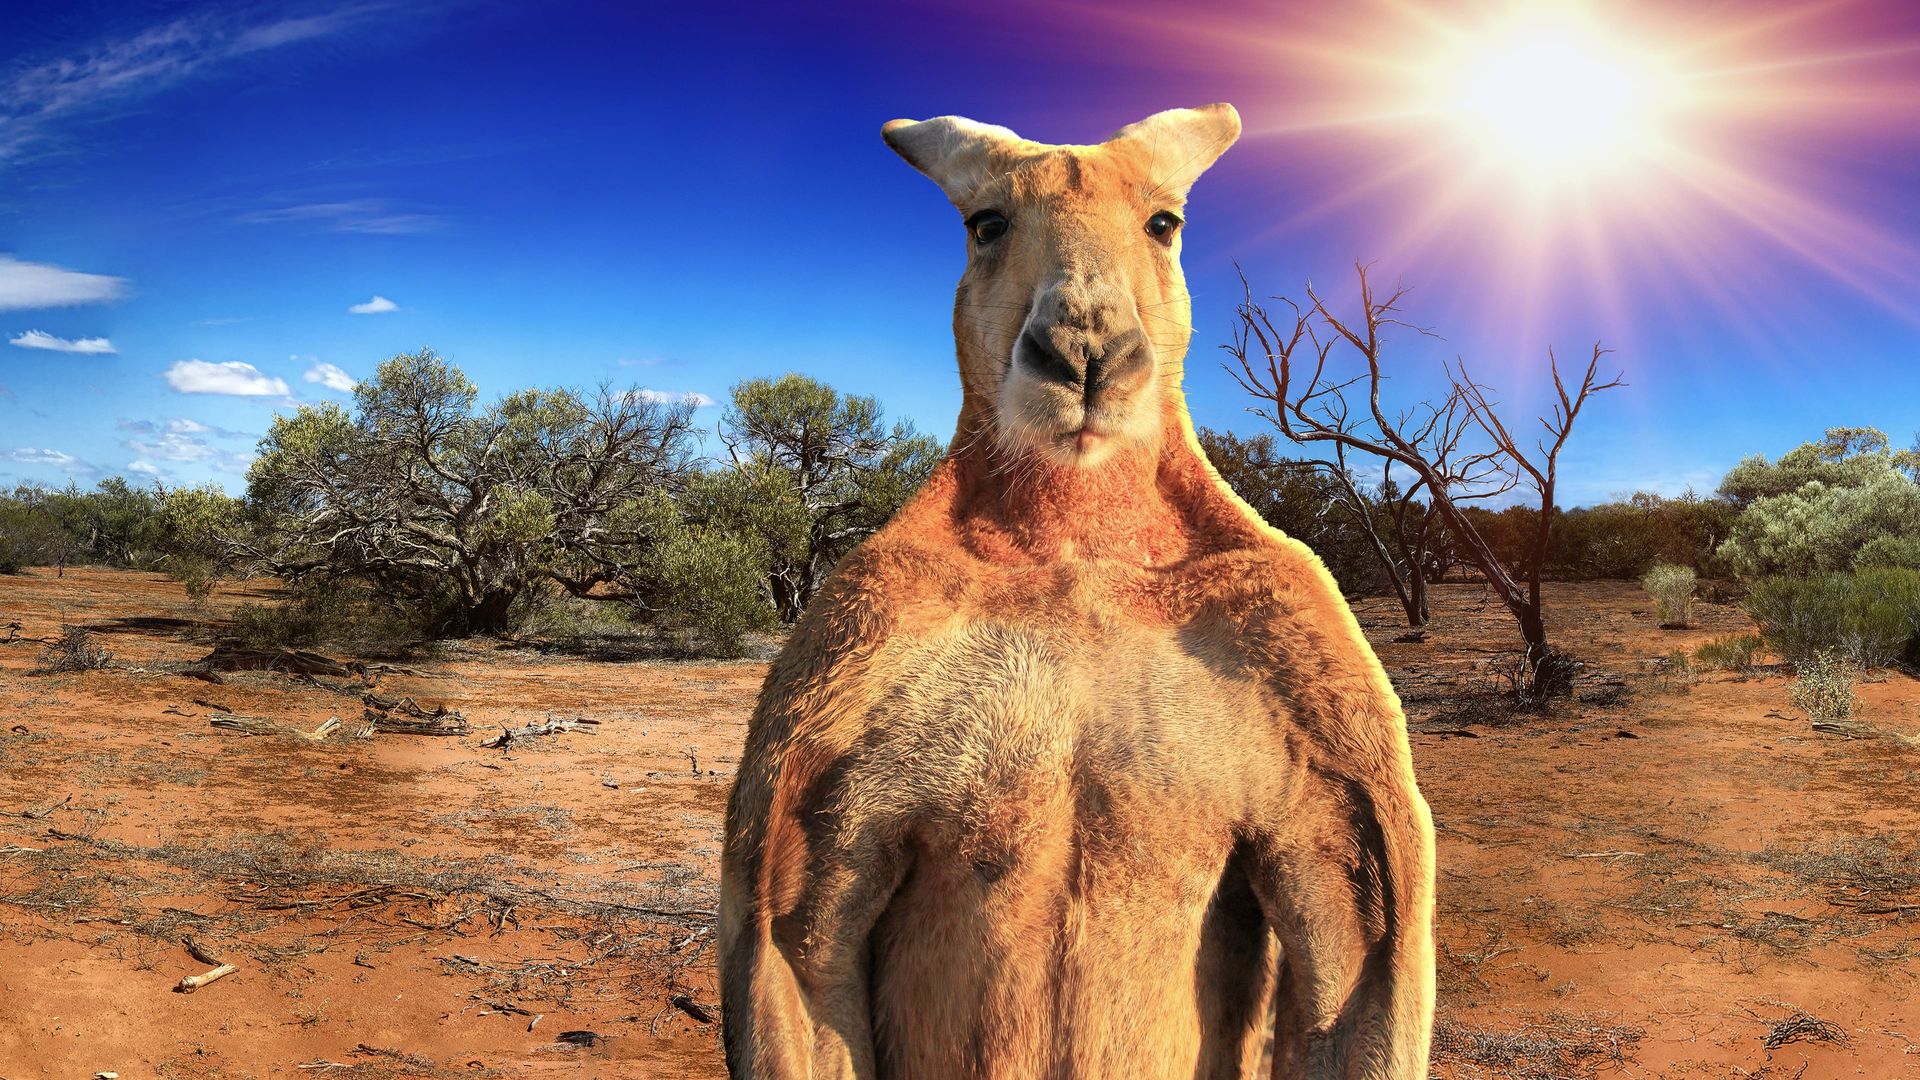 Big Red: The Kangaroo King background